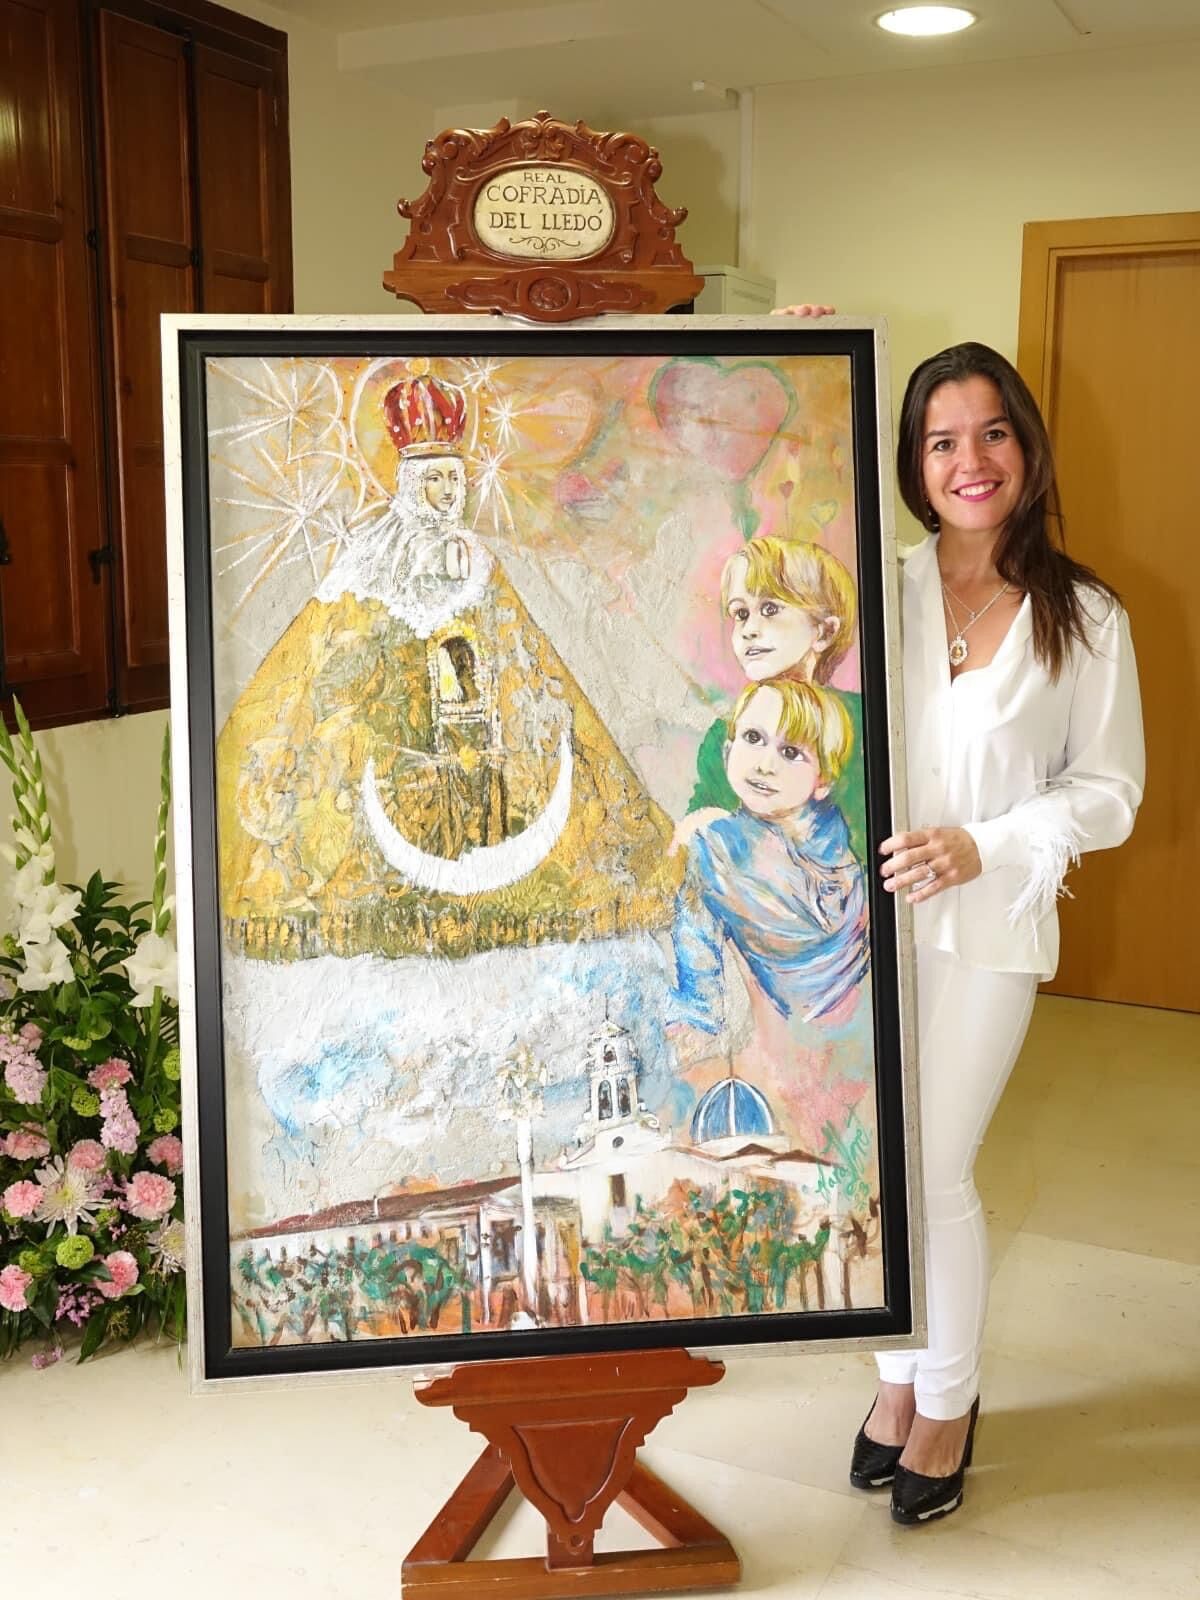 Real Cofradía de Nuestra Señora del LLedó - img-5417.jpg